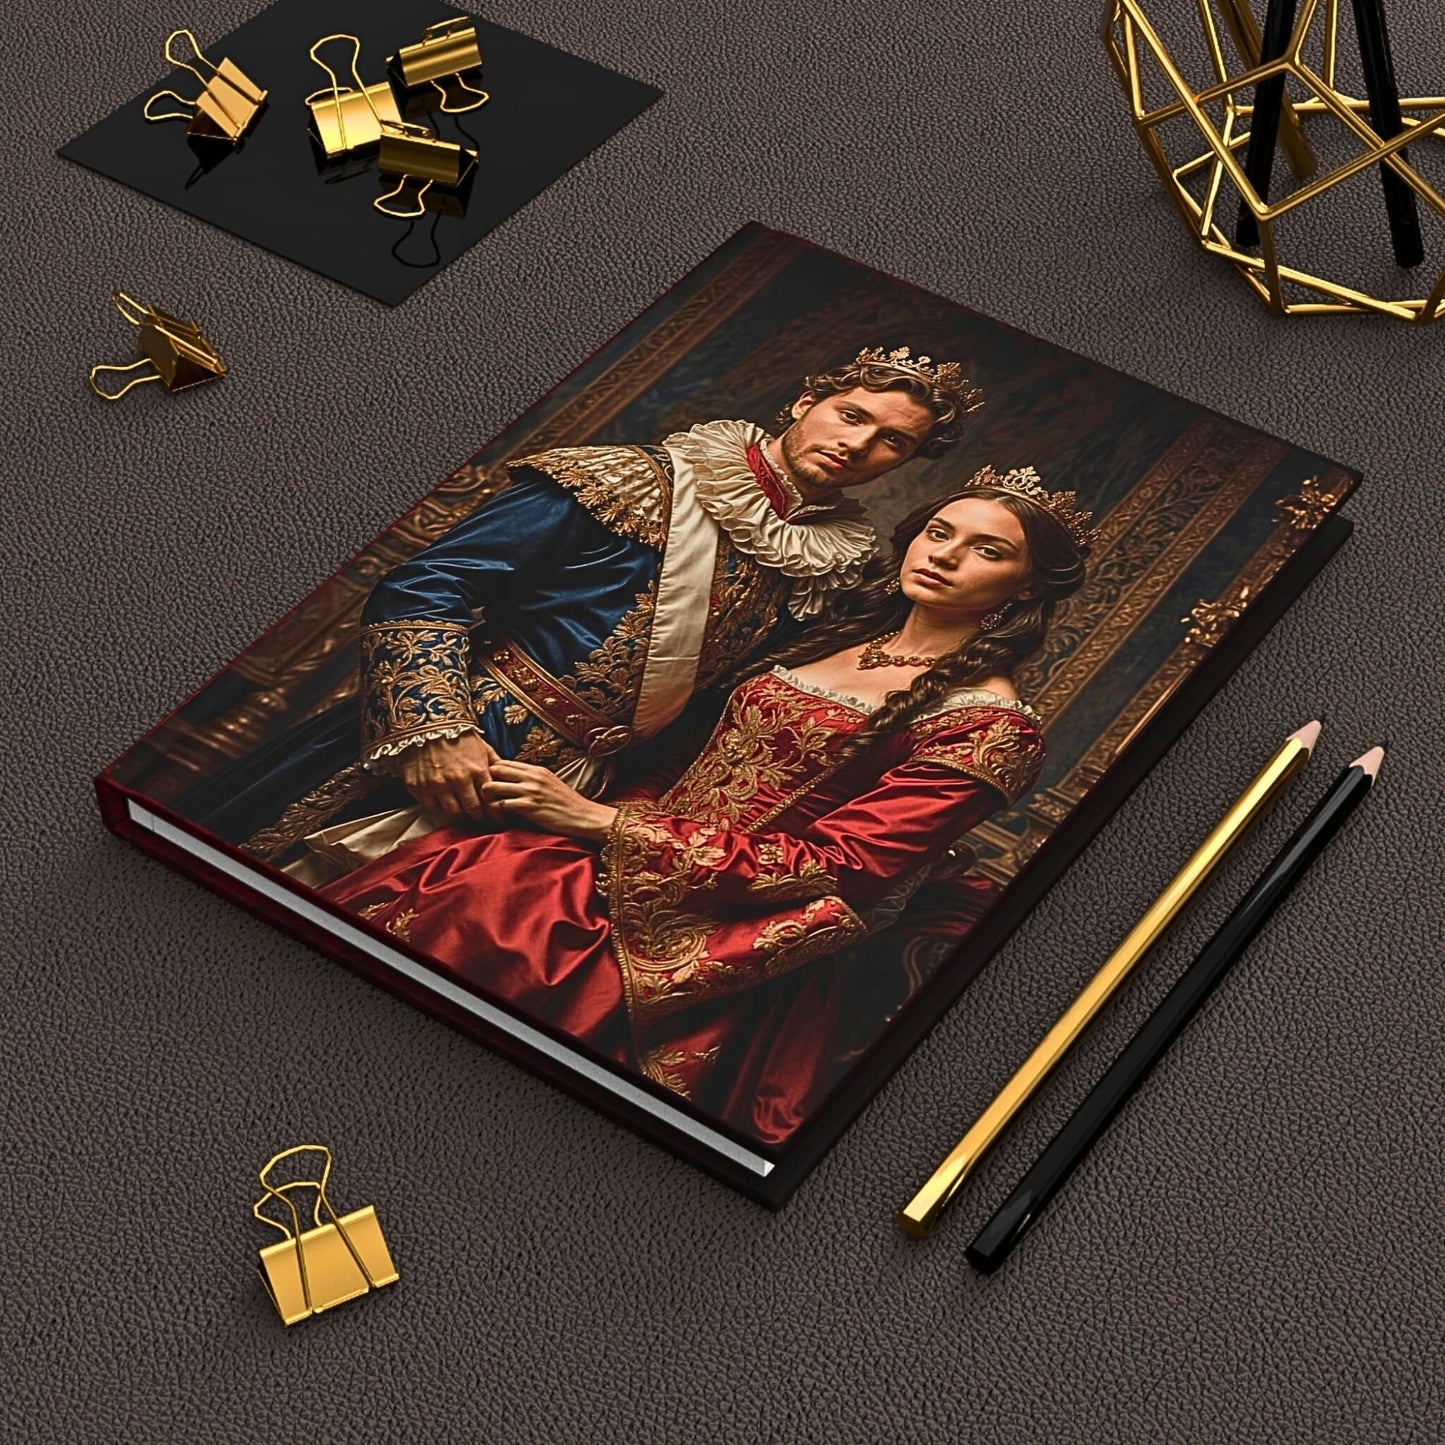 Custom Journal, Custom Royal Couples Journal from Photo, Renaissance Journal, Historical Journal, (50)